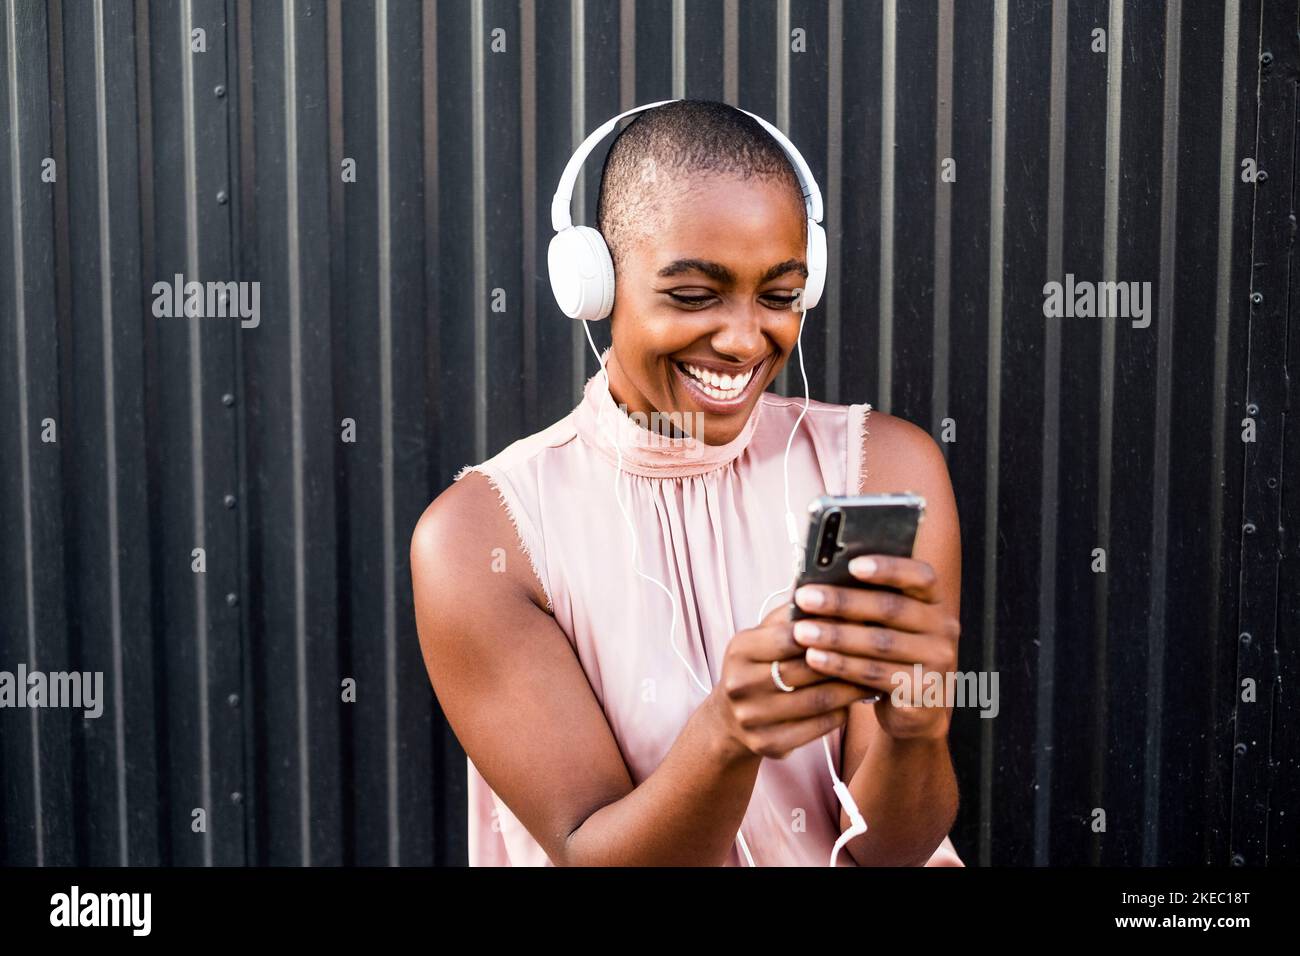 primo piano e ritratto di una giovane donna afroamericana che usa il telefono o la cella mentre ascolta musica con le cuffie - gente felice che si diverte e si diverte a sentire la musica - parete nera sullo sfondo Foto Stock